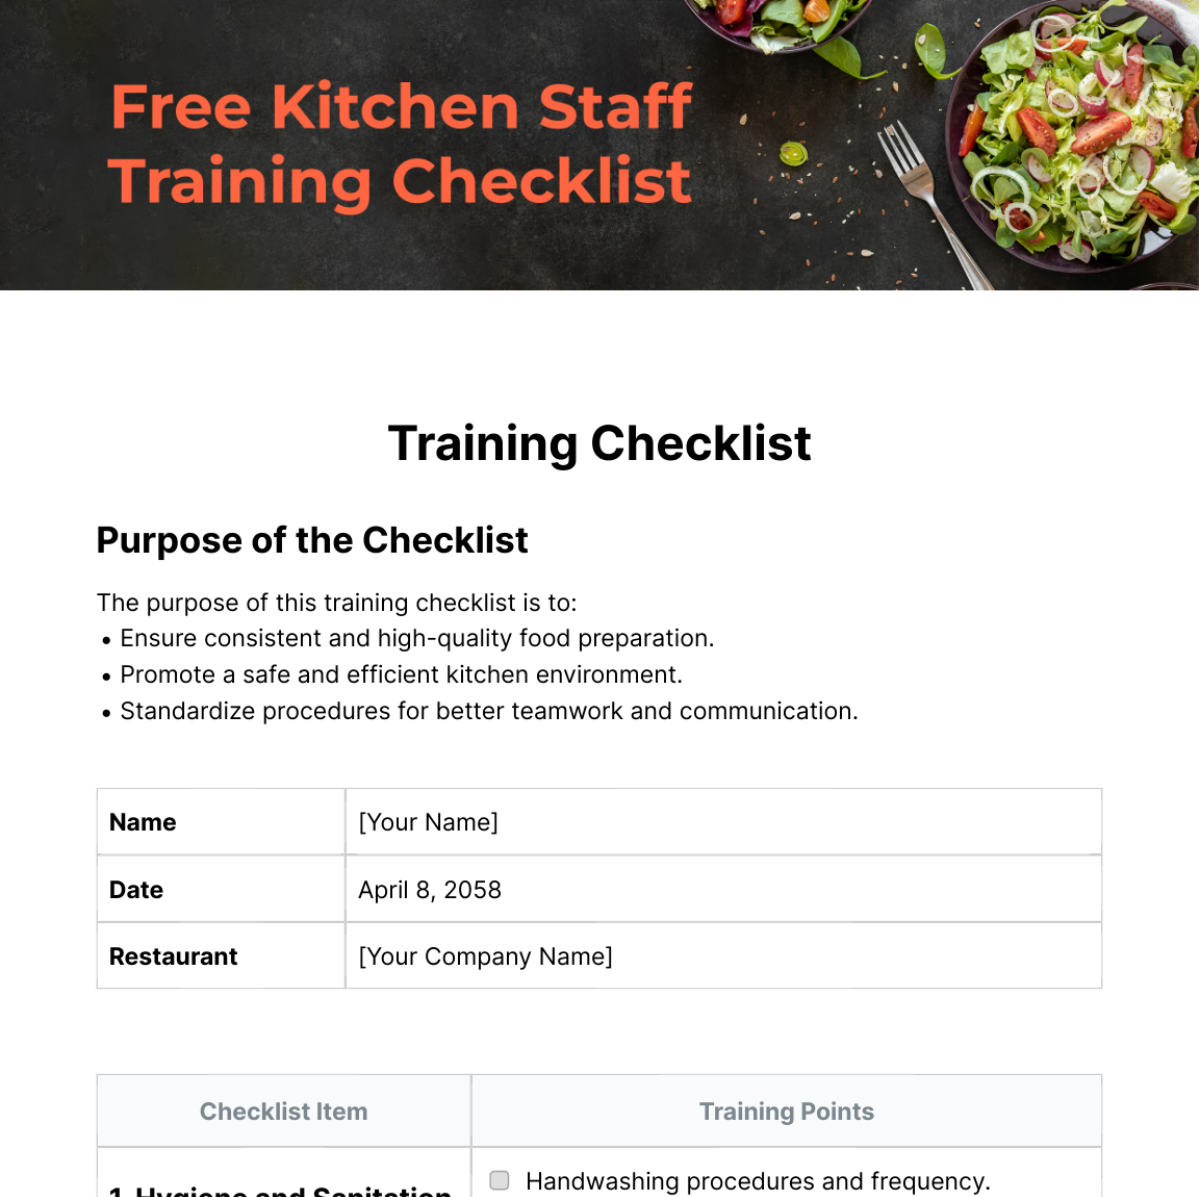 Free Kitchen Staff Training Checklist Template